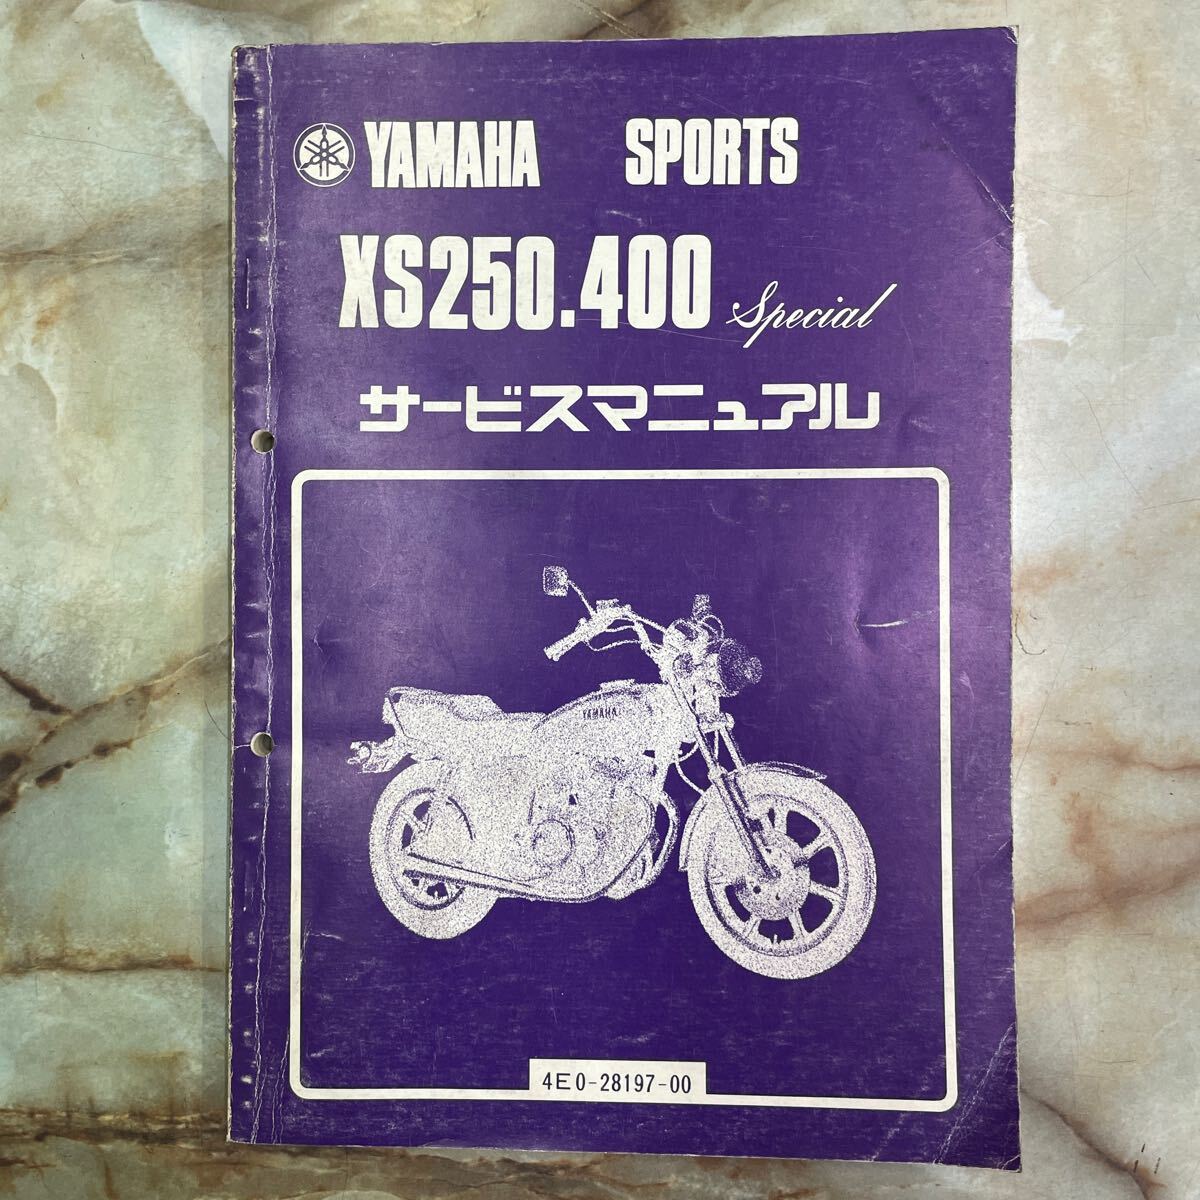  Yamaha XS250.400 special service manual 